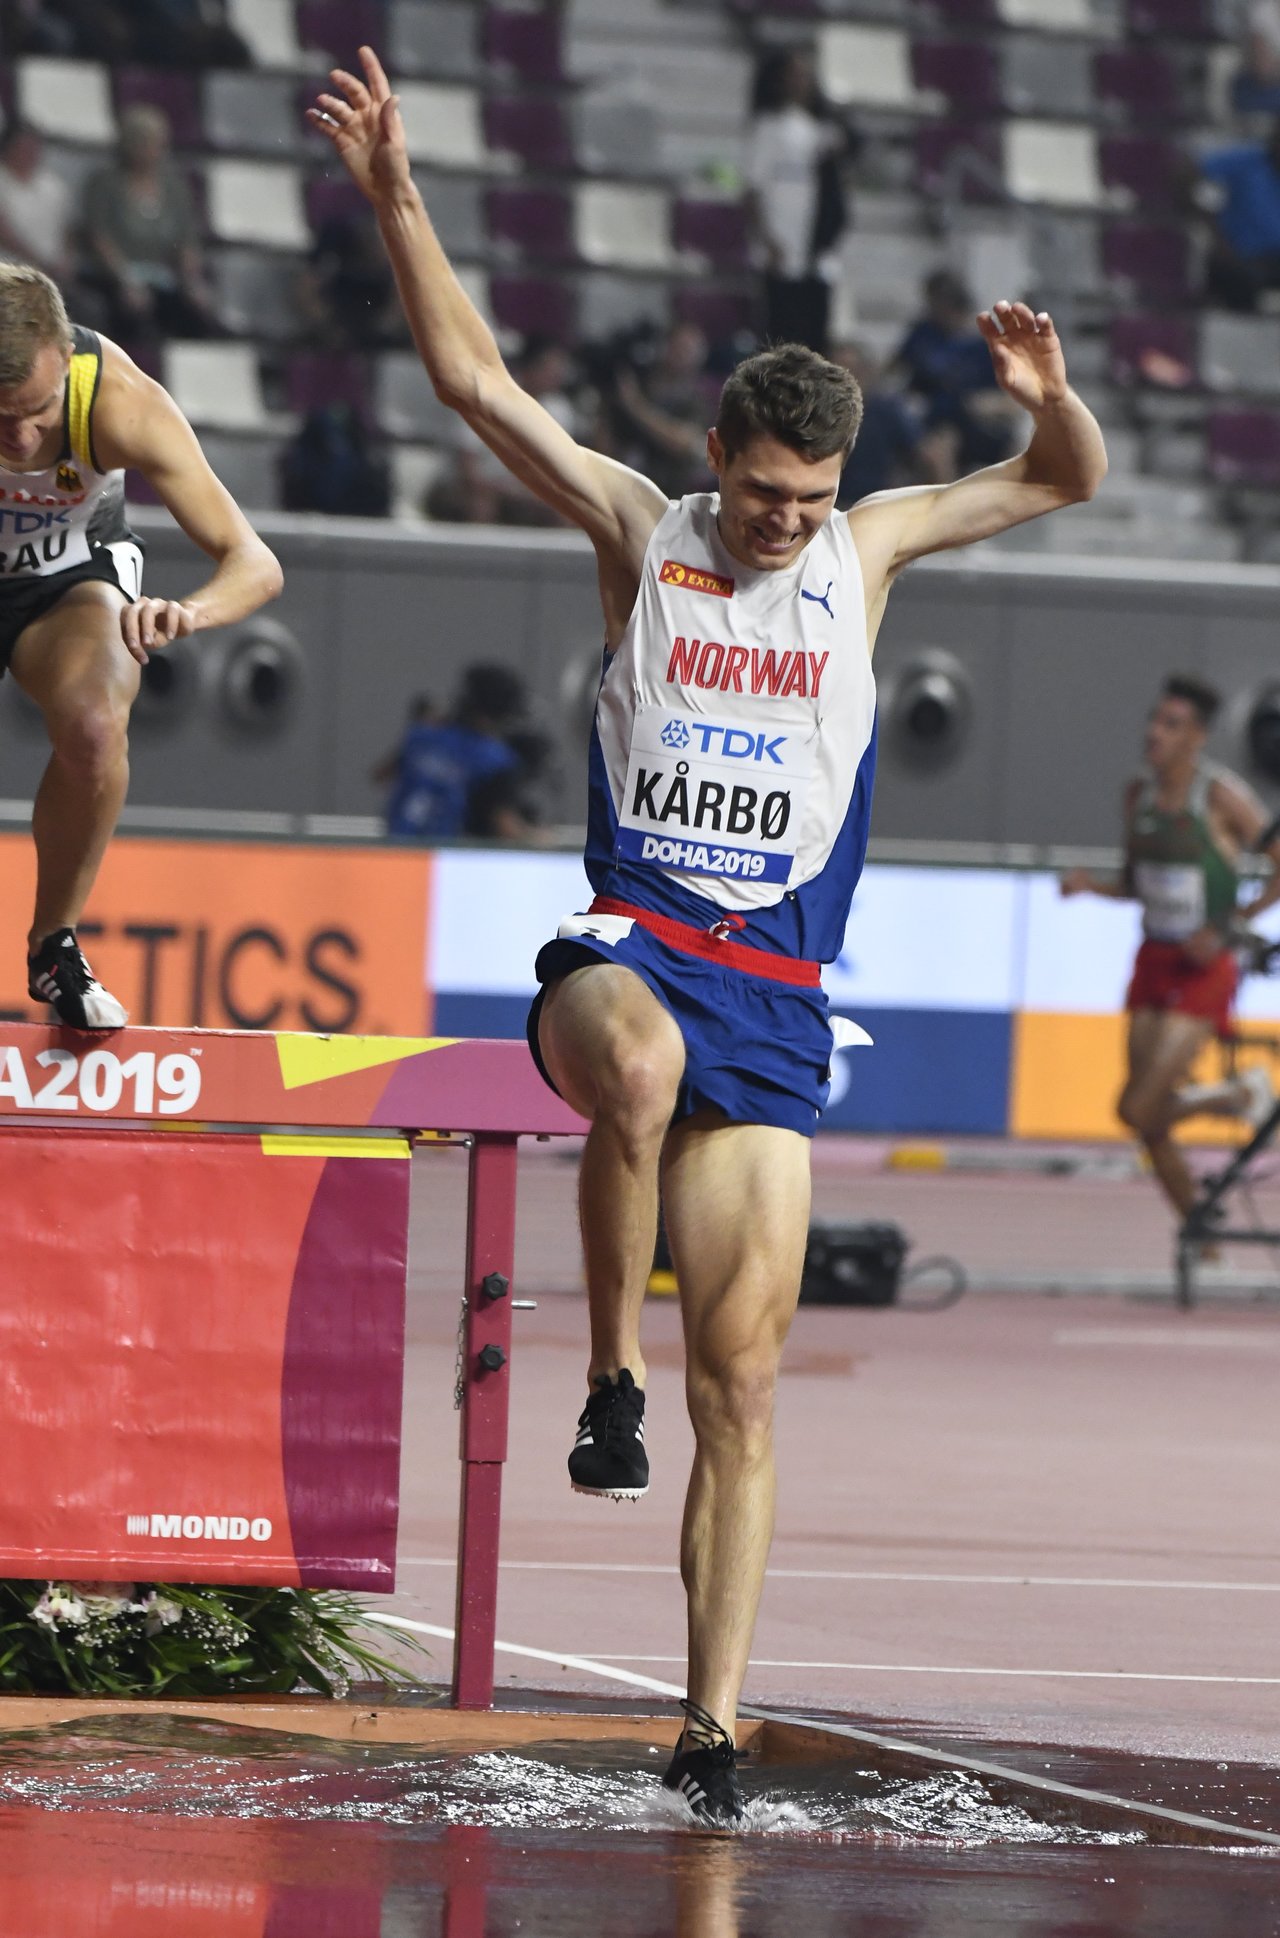 VM friidrett 2019 Doha - Tom Erling KÅRBØ - forsøk 3000 m hinder